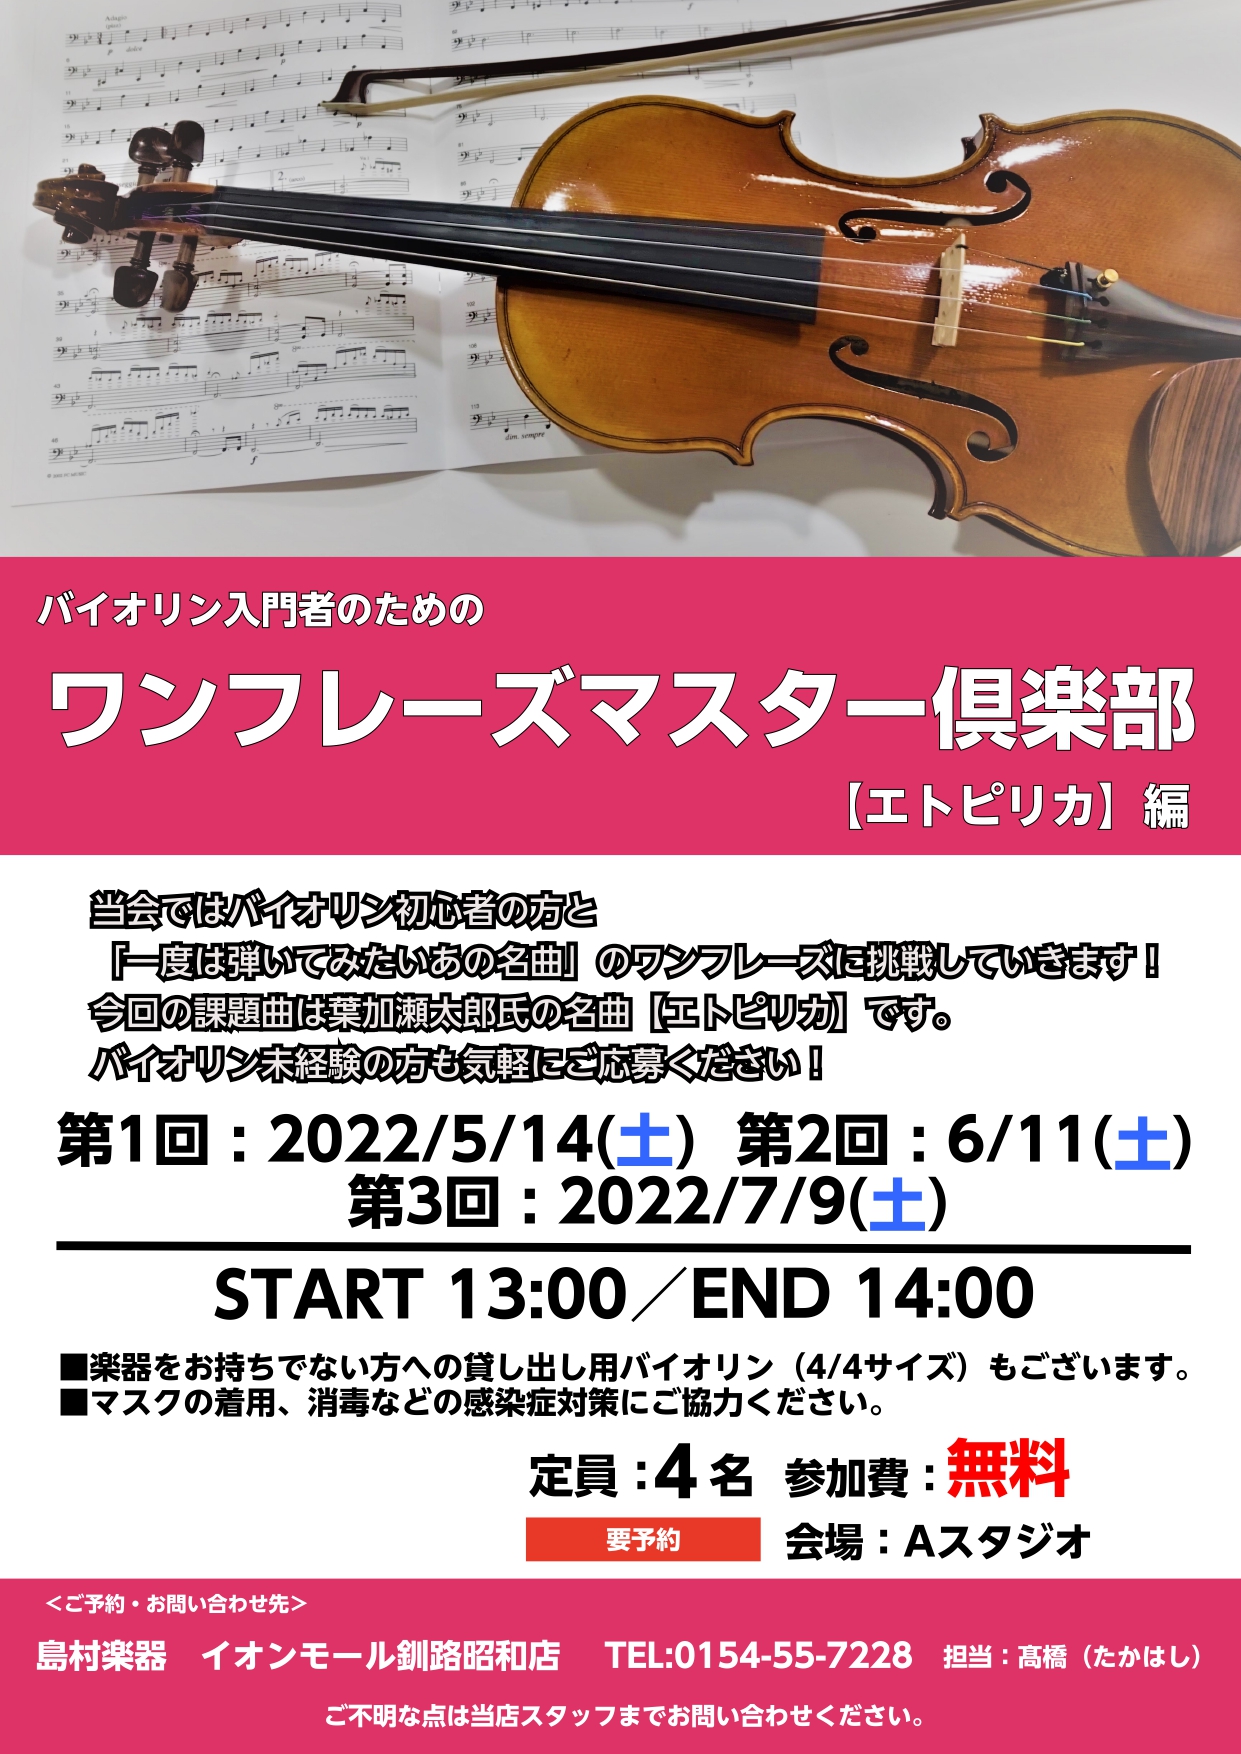 皆さんこんにちは！弦楽器担当の髙橋です。 釧路店では5月から新たに''バイオリン入門者''のための【ワンフレーズマスター倶楽部】を開催します！ 当会は「バイオリンで一度は弾いてみたい名曲のワンフレーズを入門者の皆さんと一緒にマスターしていこう！」といった企画です。 第1期は毎月1度の開催で全3回を予 […]